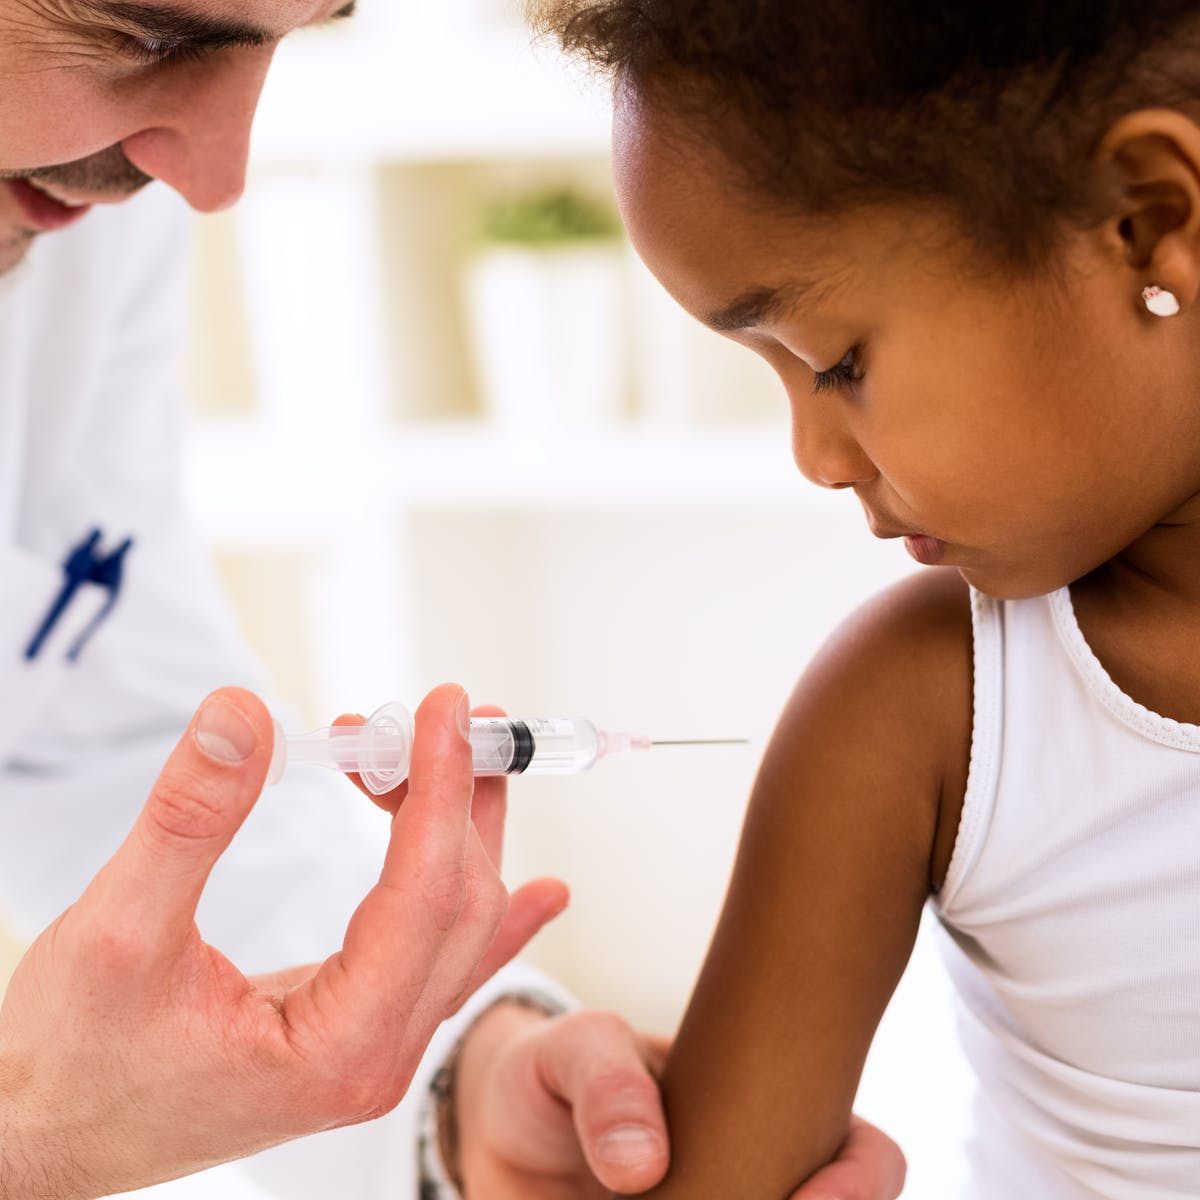 درخواست نماینده مجلس برای تست بالینی واکسن کرونای ایرانی روی کودکان